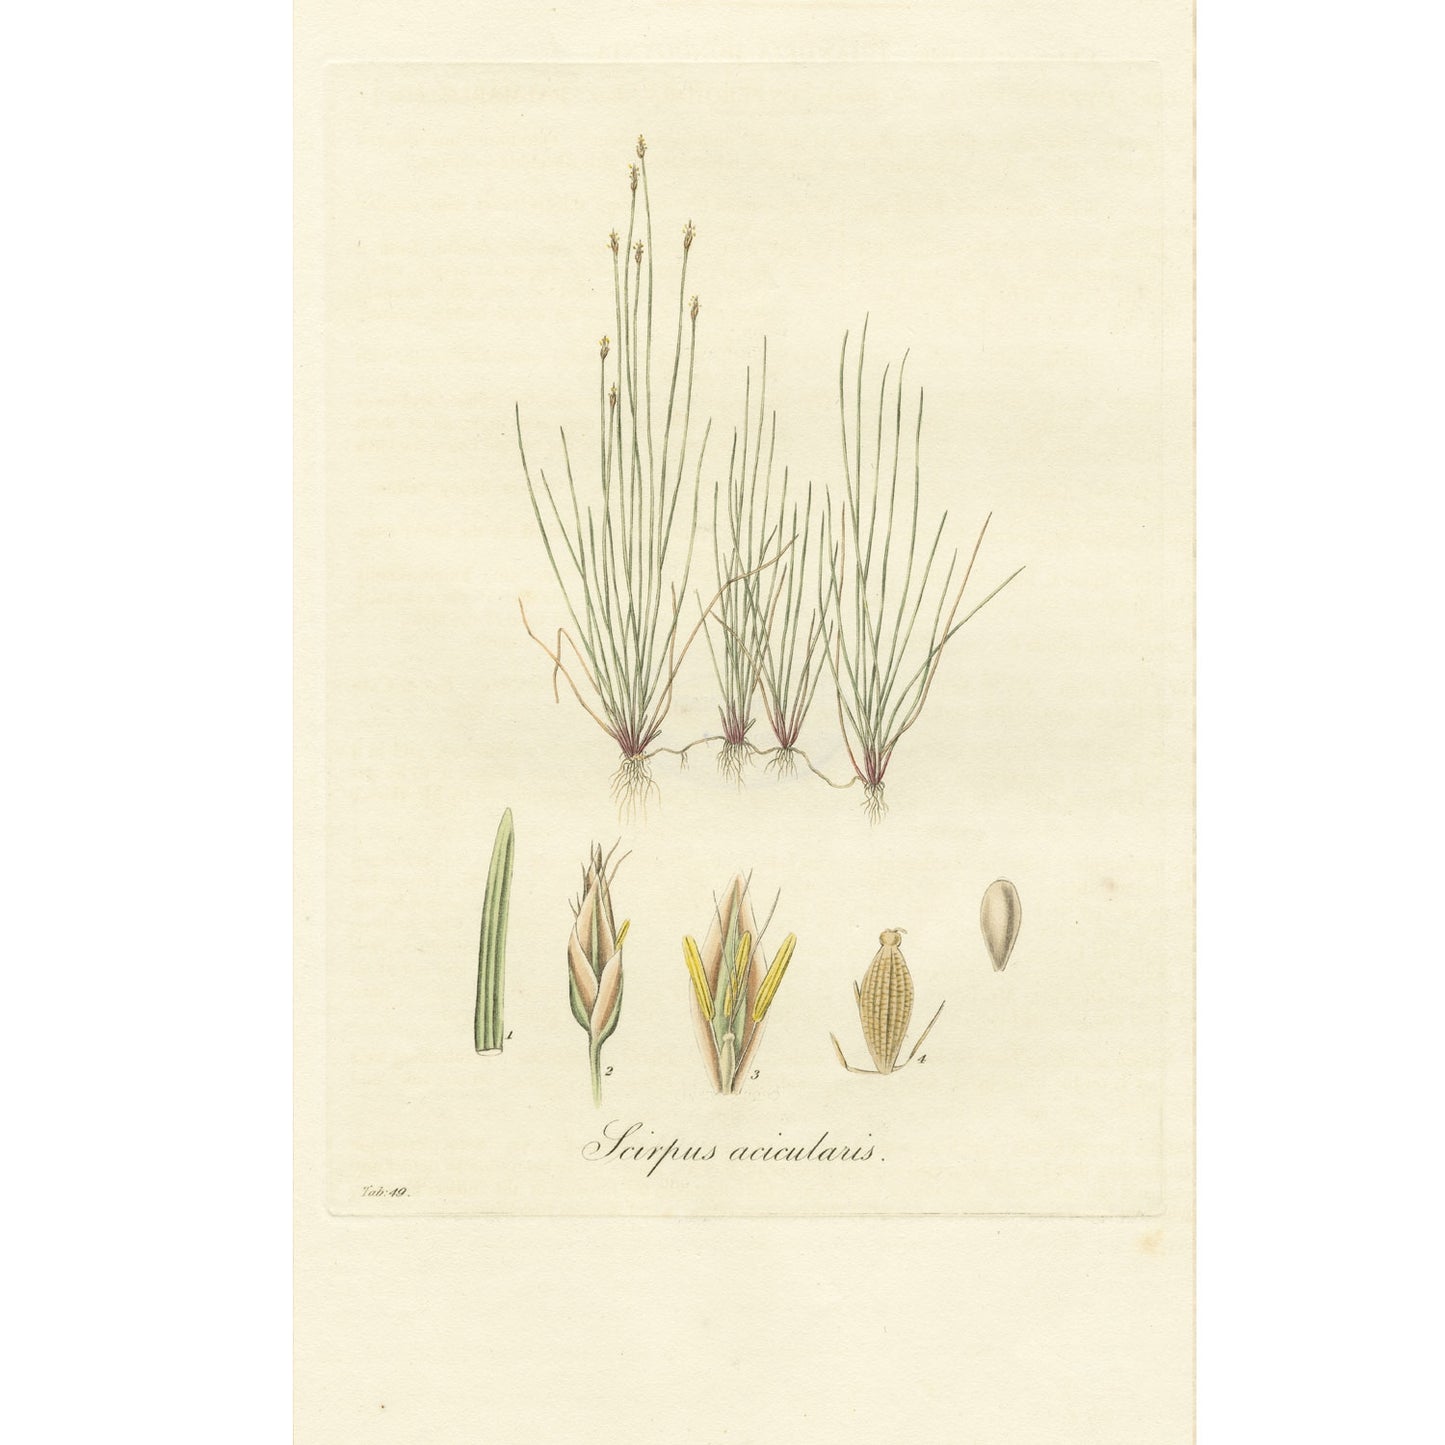 Scirpus acicularis ‘Flora Londinensis’ Botanical Print